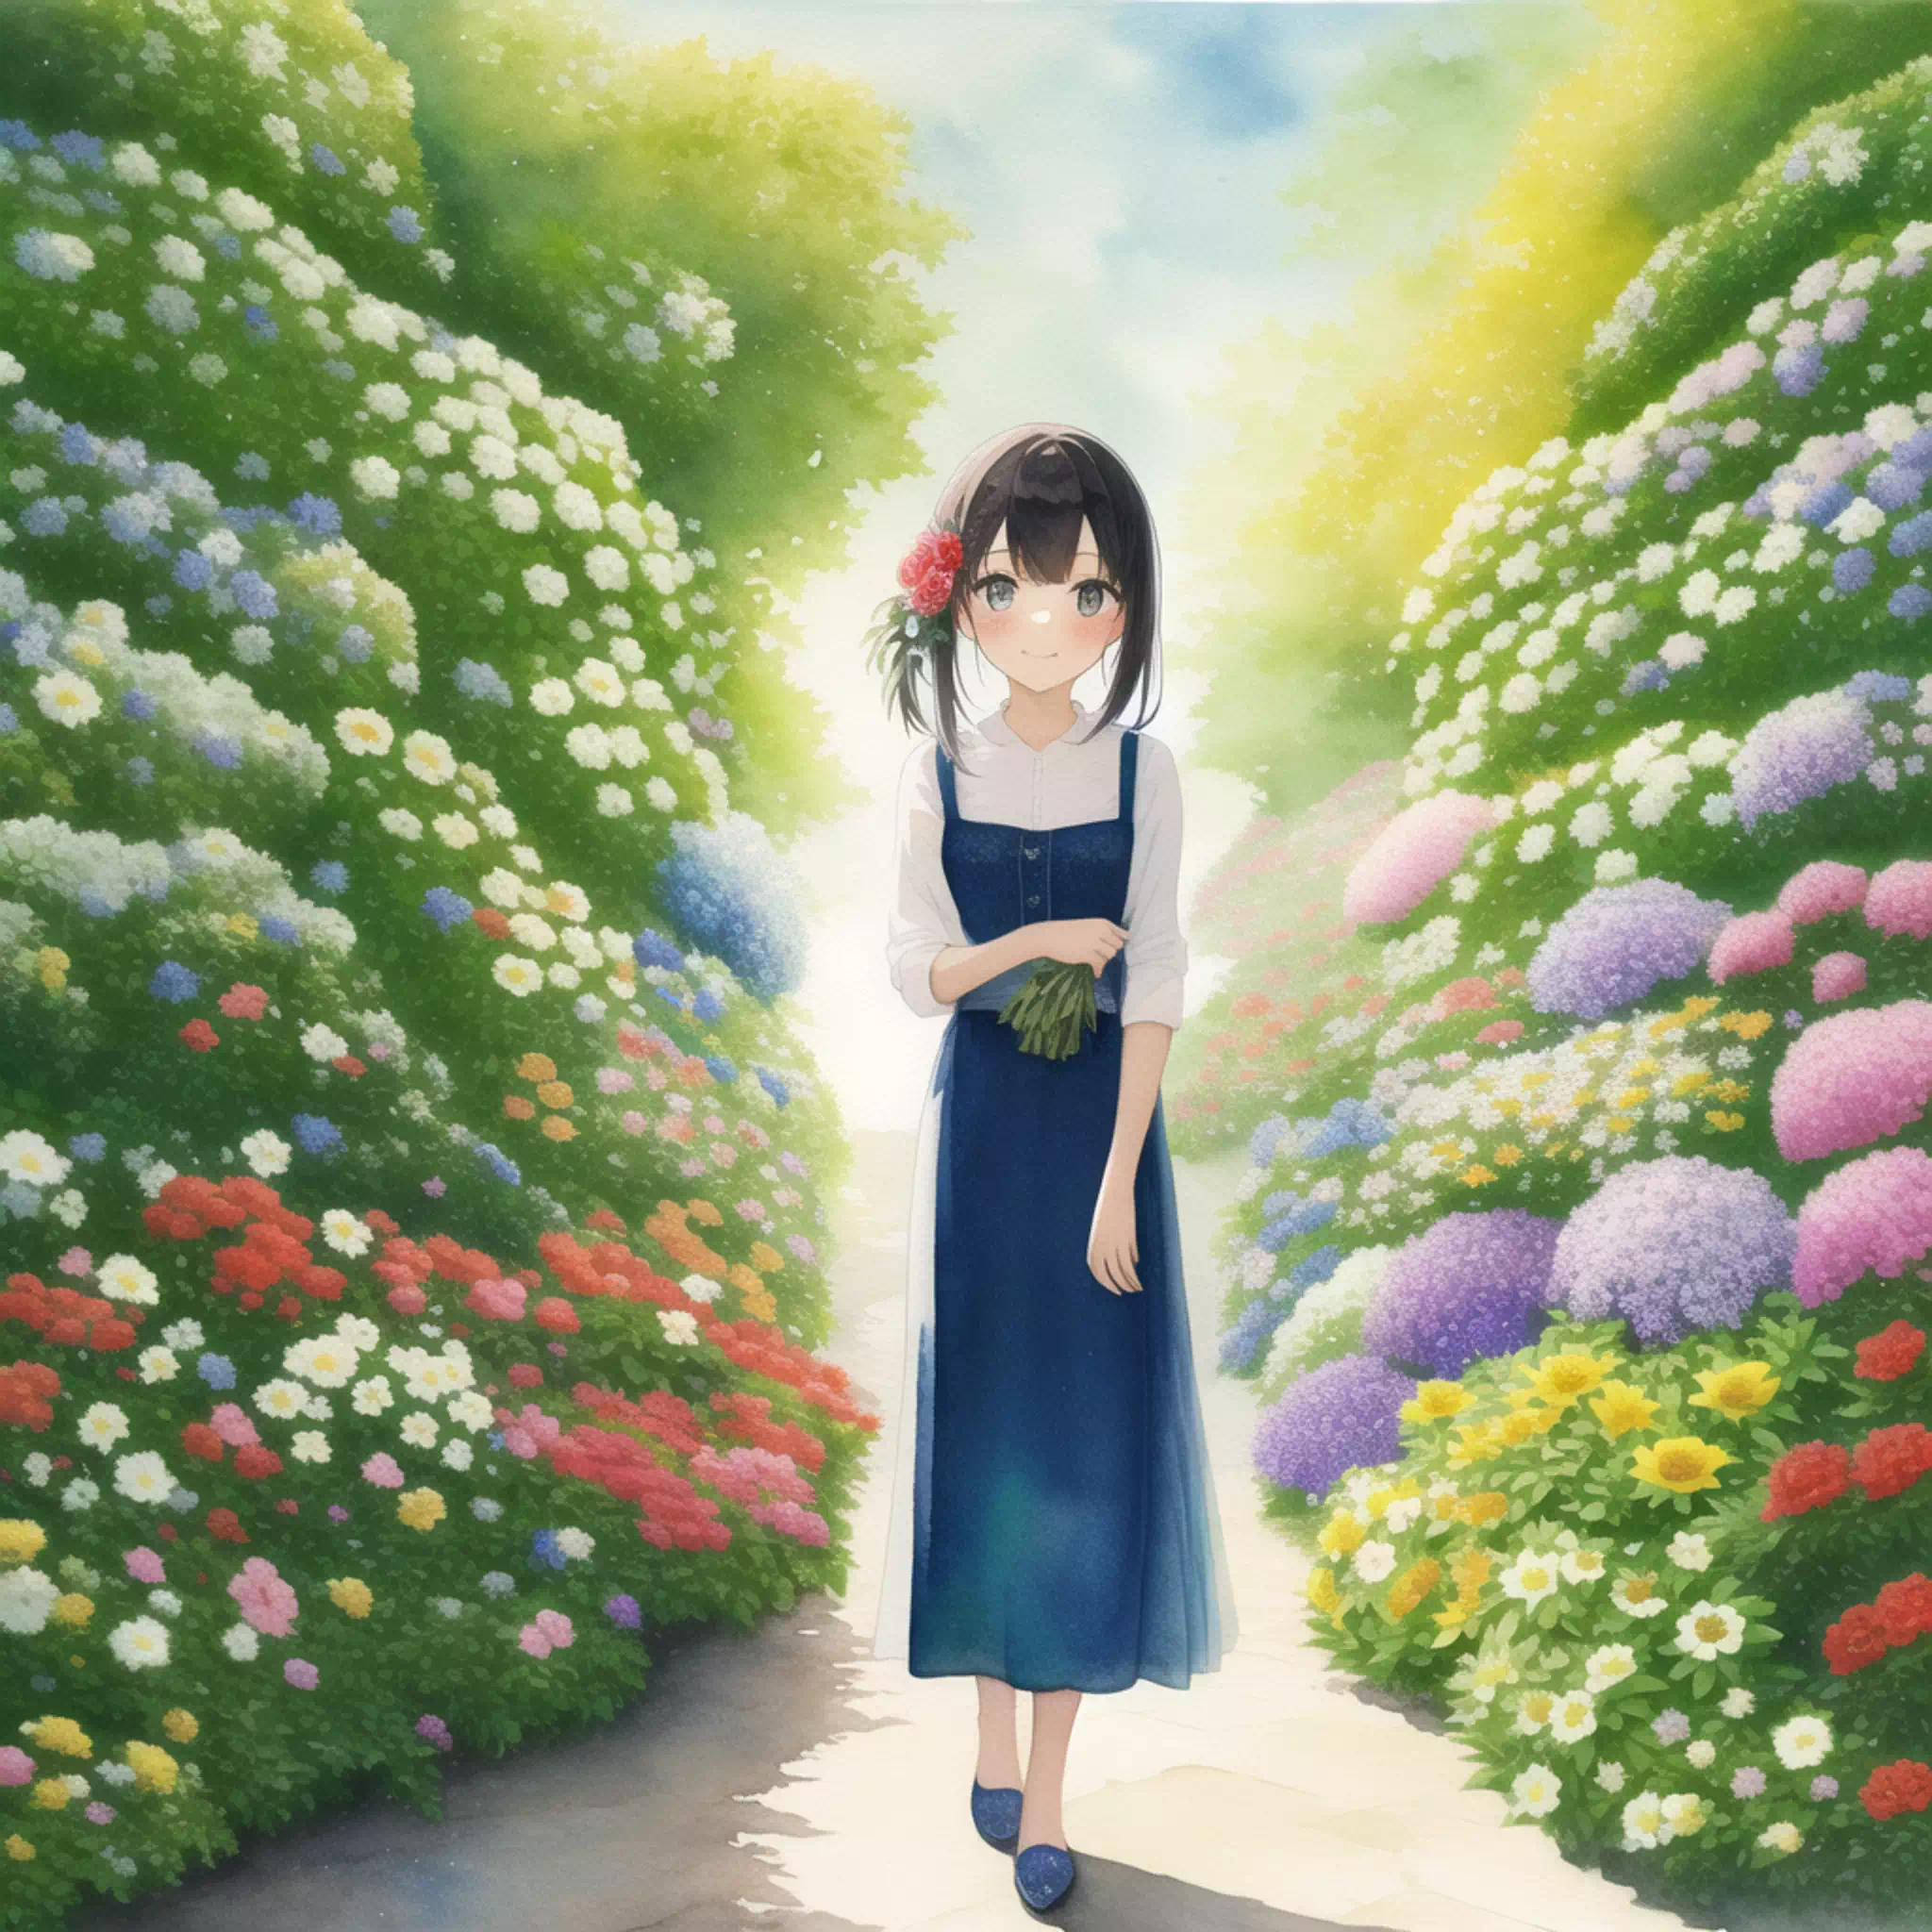 Between Flowers &#8211; 花の間